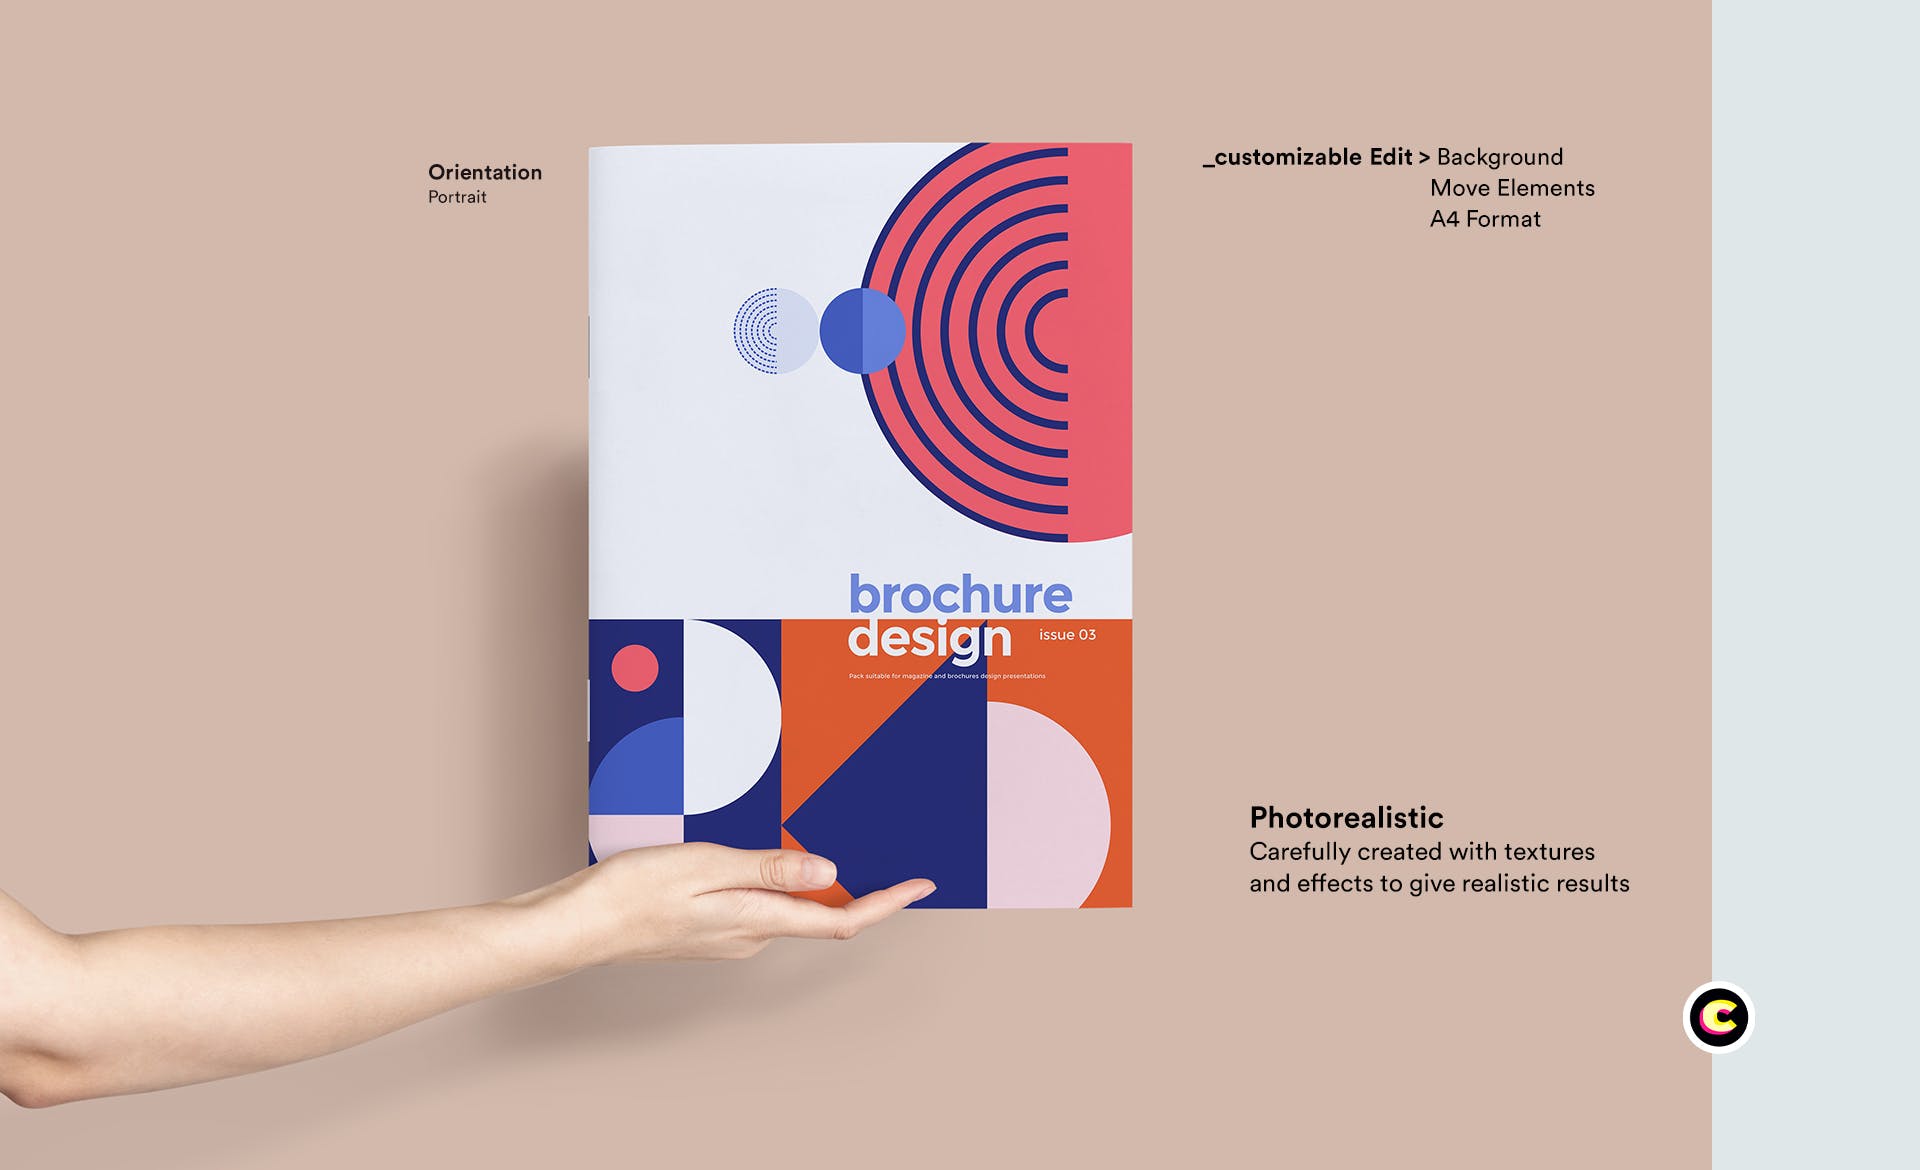 企业品牌画册/宣传册封面设计效果图样机第一素材精选 Brochure Mockup插图(1)